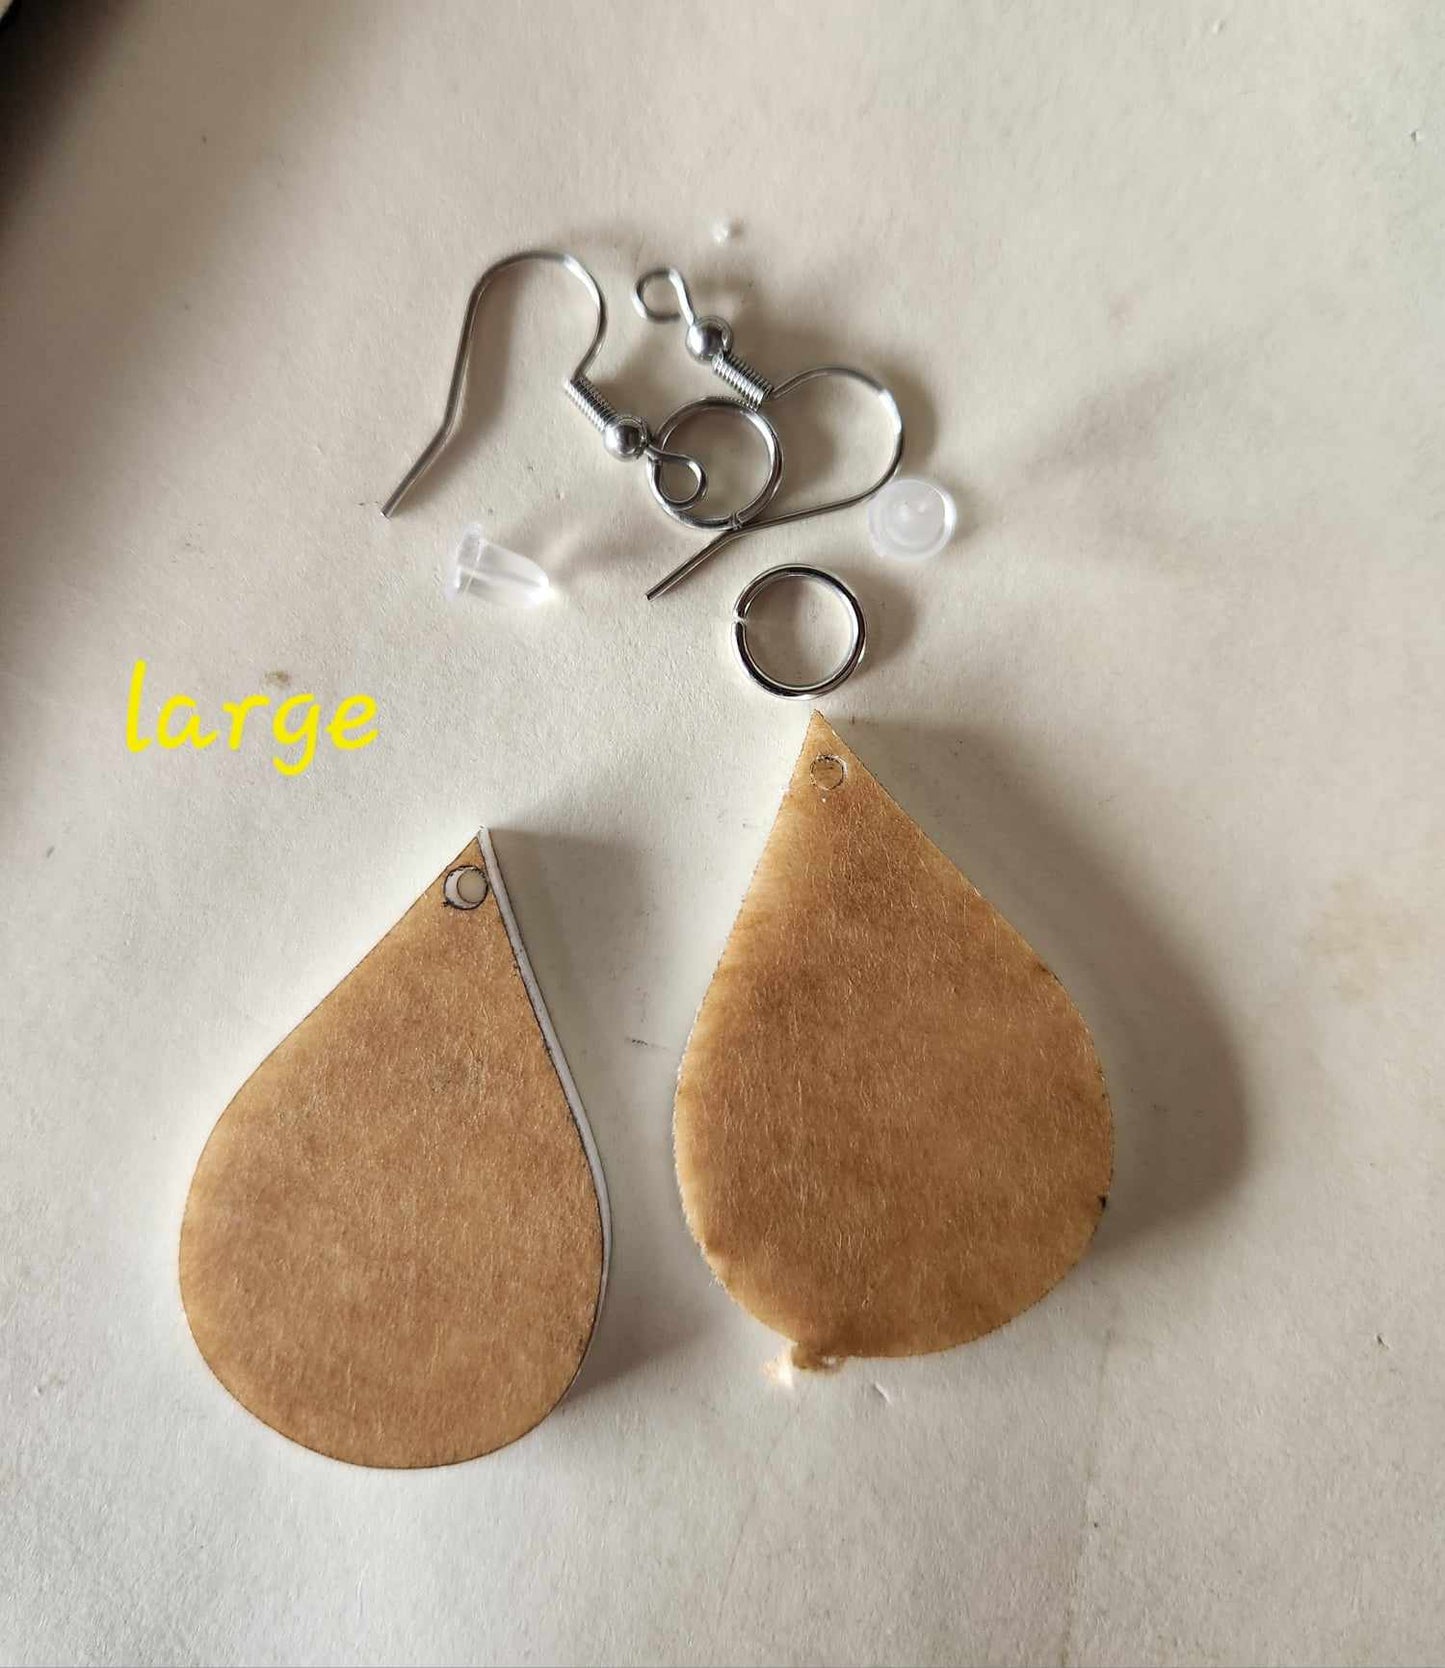 Tear drop earrings kit